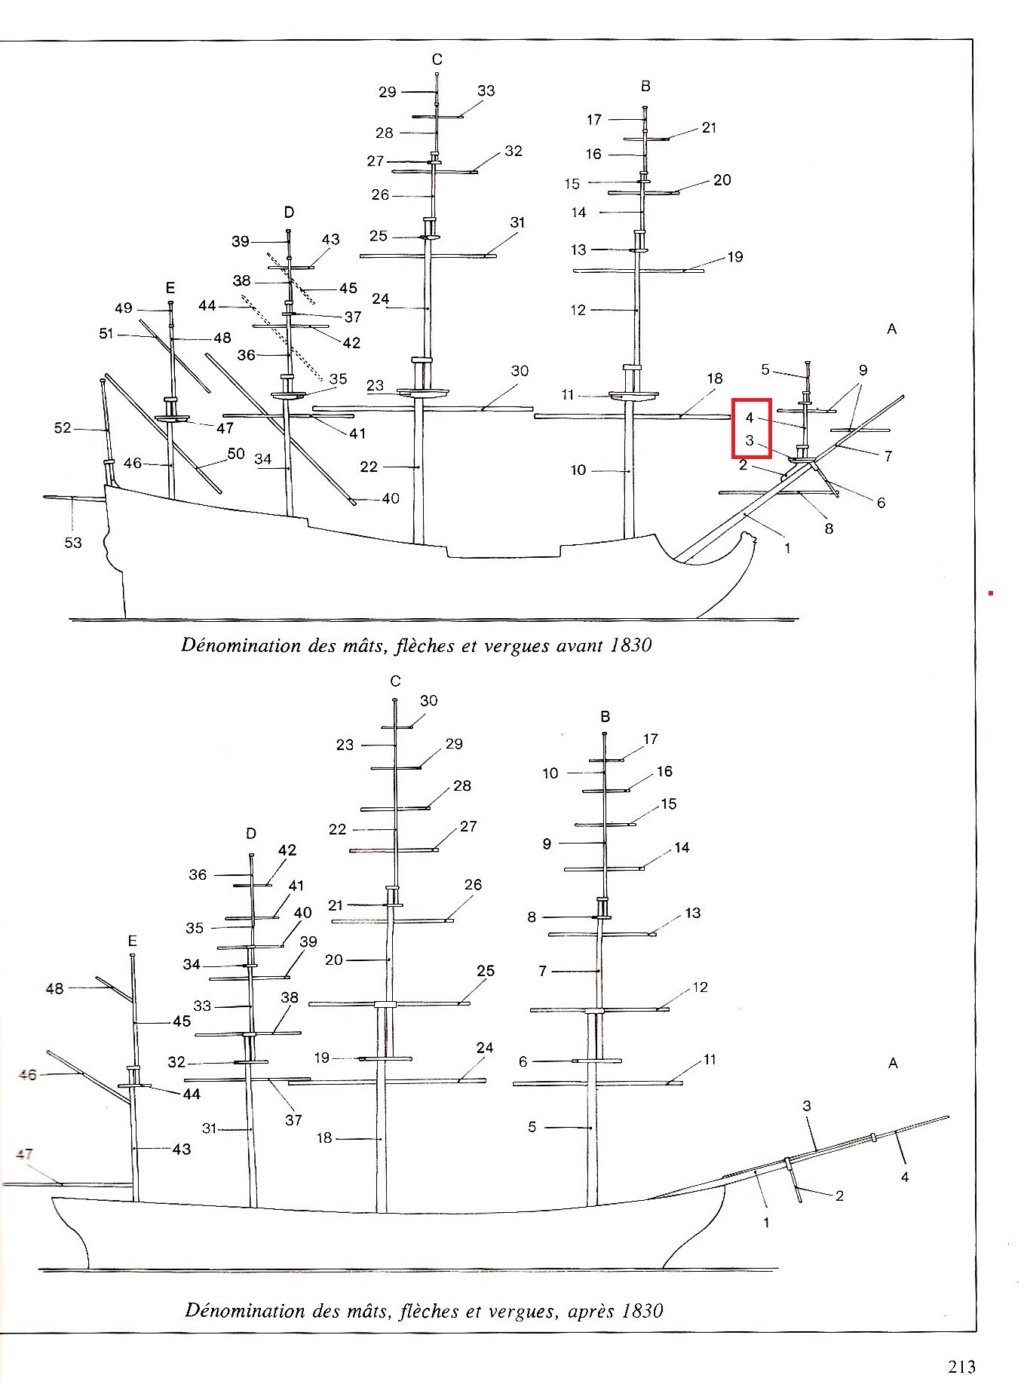 Construction du "Sovereign of the Seas" au 1/84 par Glénans - Partie II - Page 38 Plan_m10